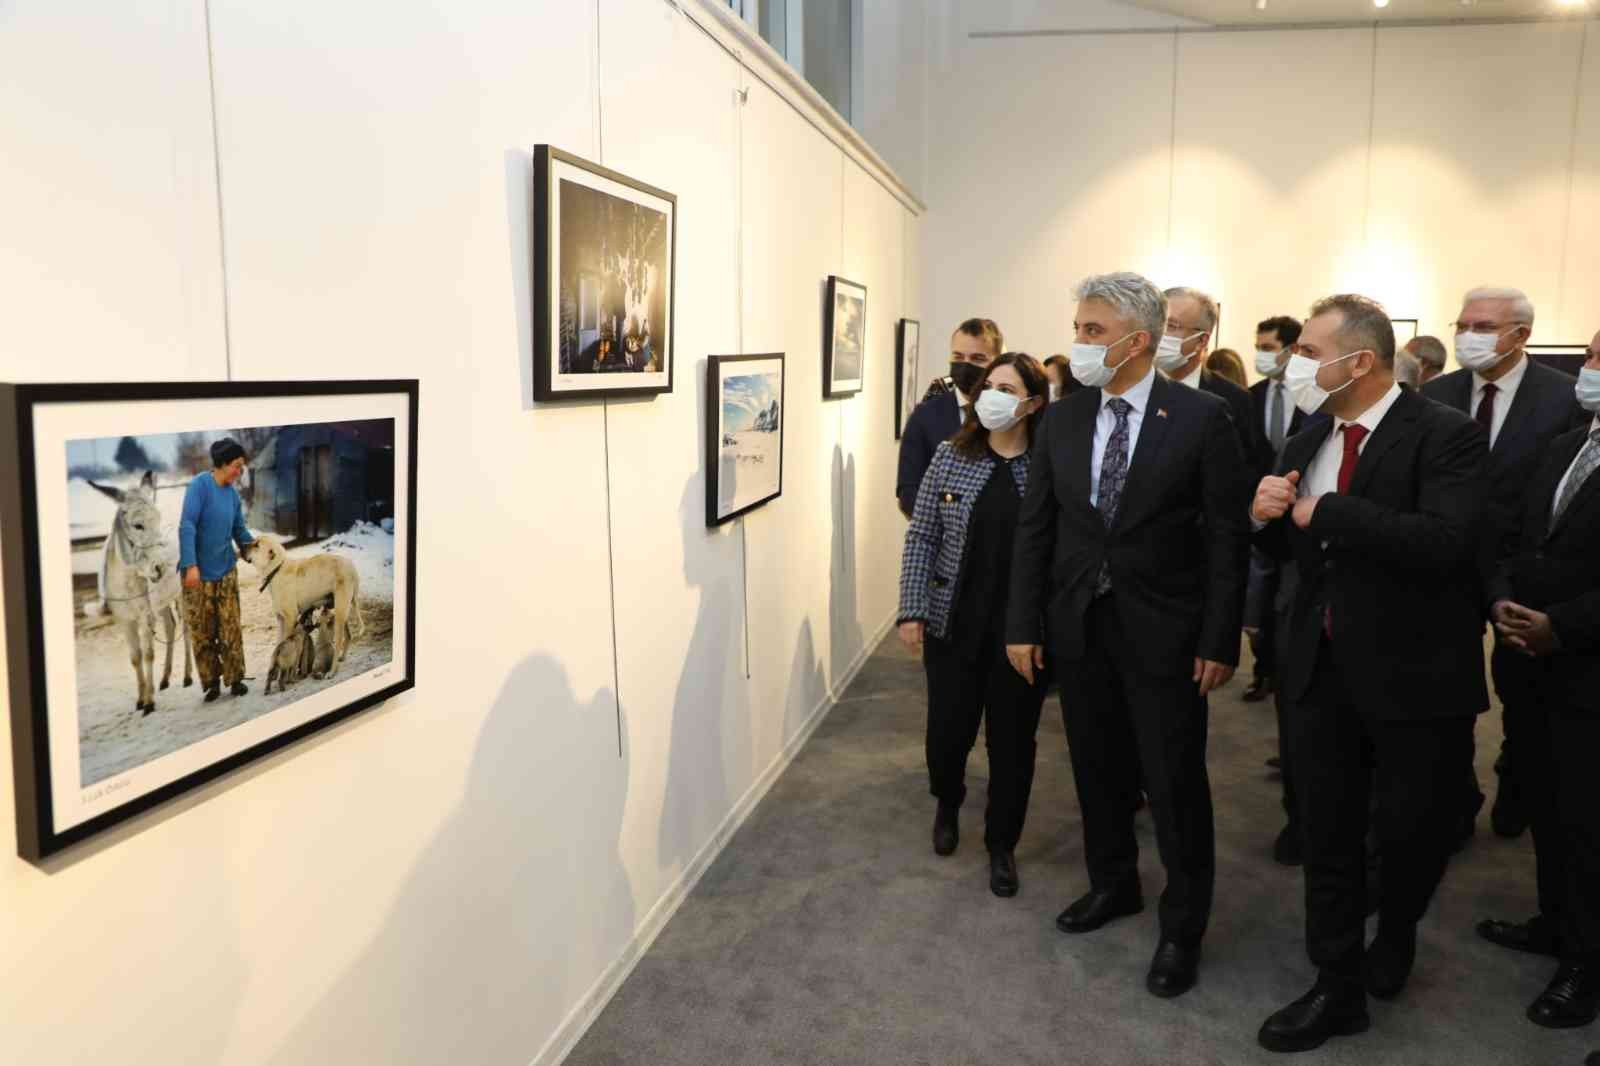 Erzincan Kültür ve Sanat Günleri’nin açılış galası yapıldı #erzincan